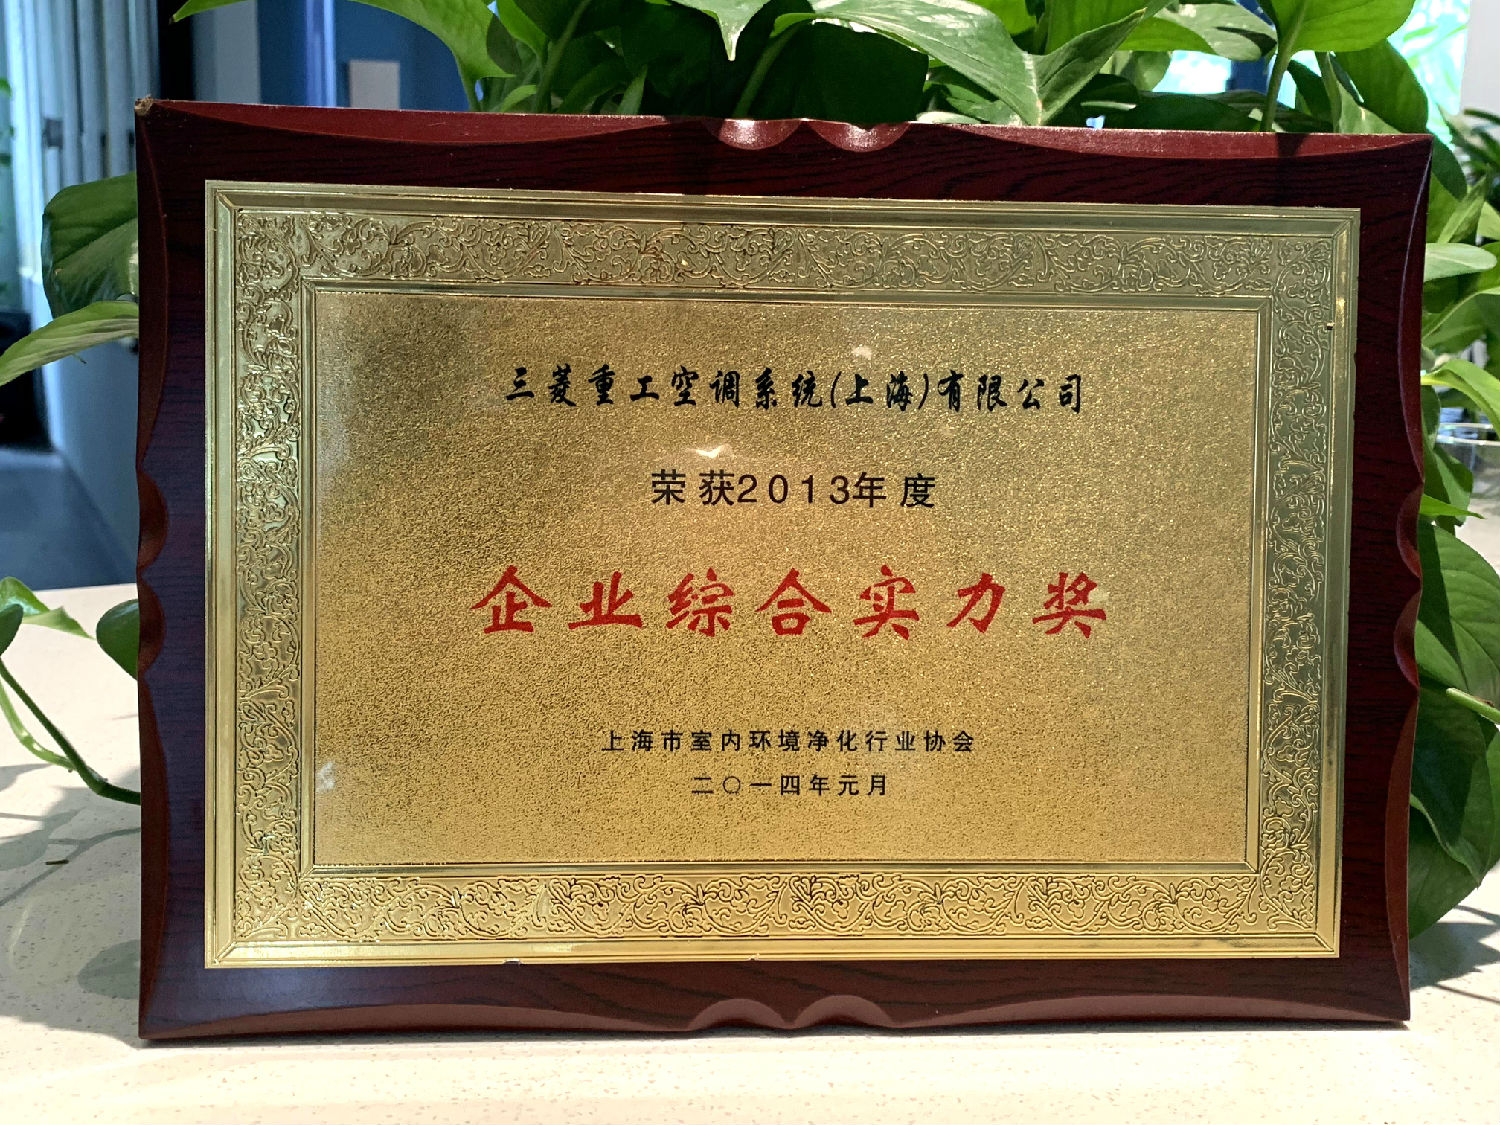 2013年日新环境荣获三菱重工空调系统颁发“企业综合实力奖”